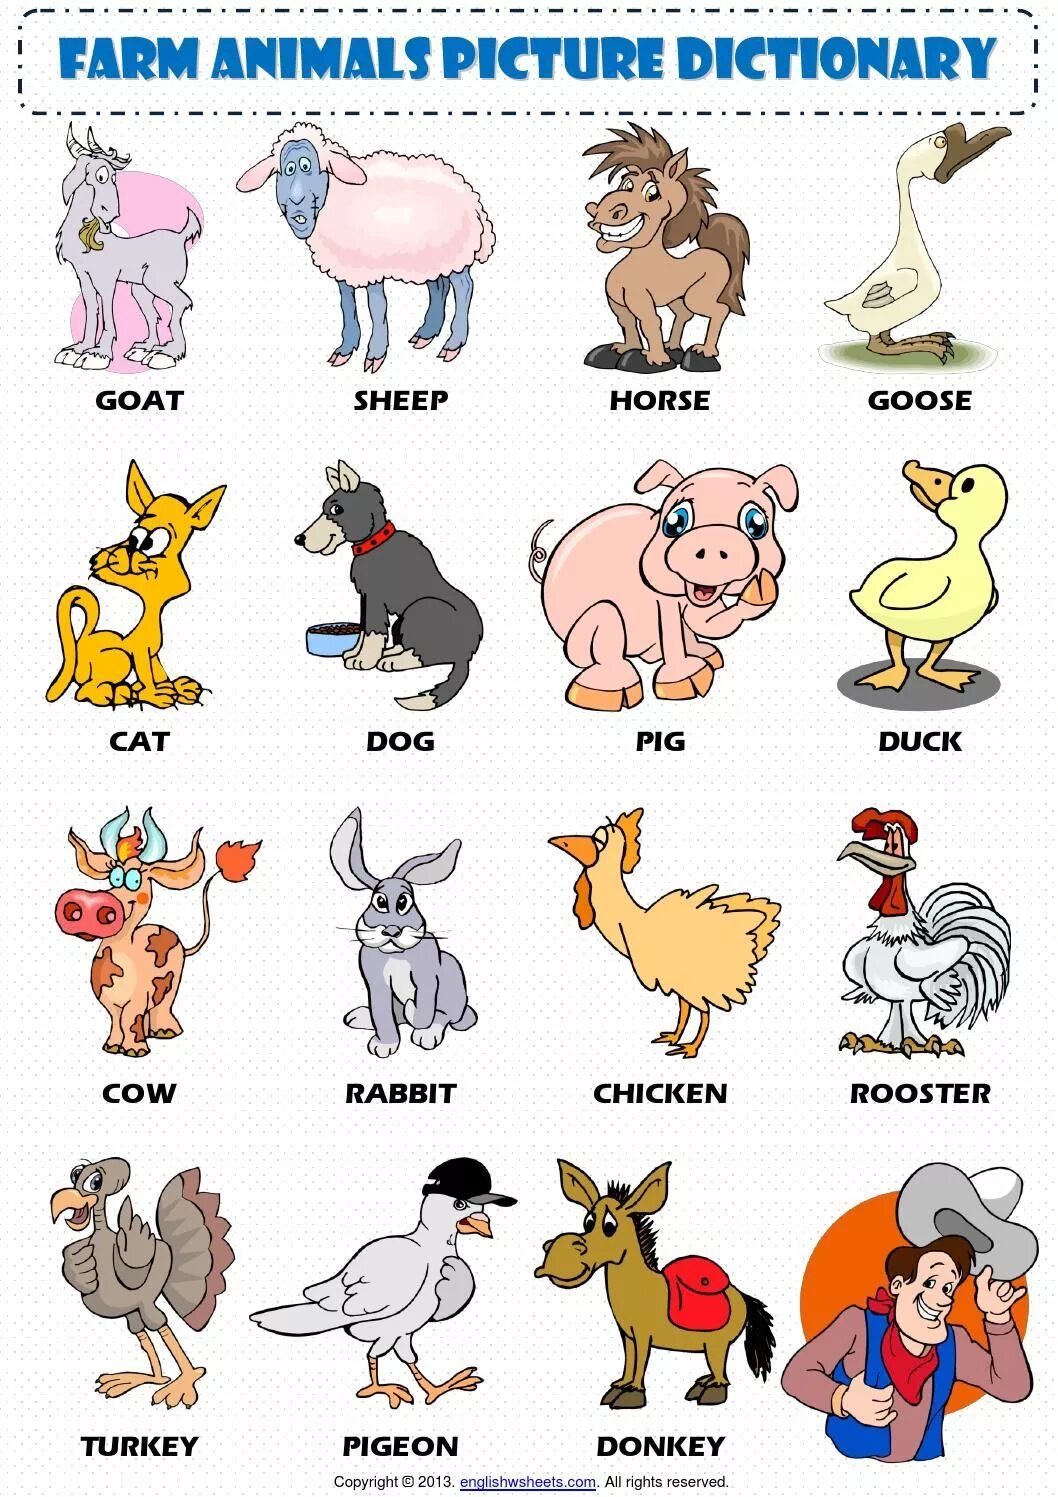 Animals translate. Домашние животные на английском для детей. Животные на ферме на английском. Животные на англ для детей. Животные фермы на английском для детей.